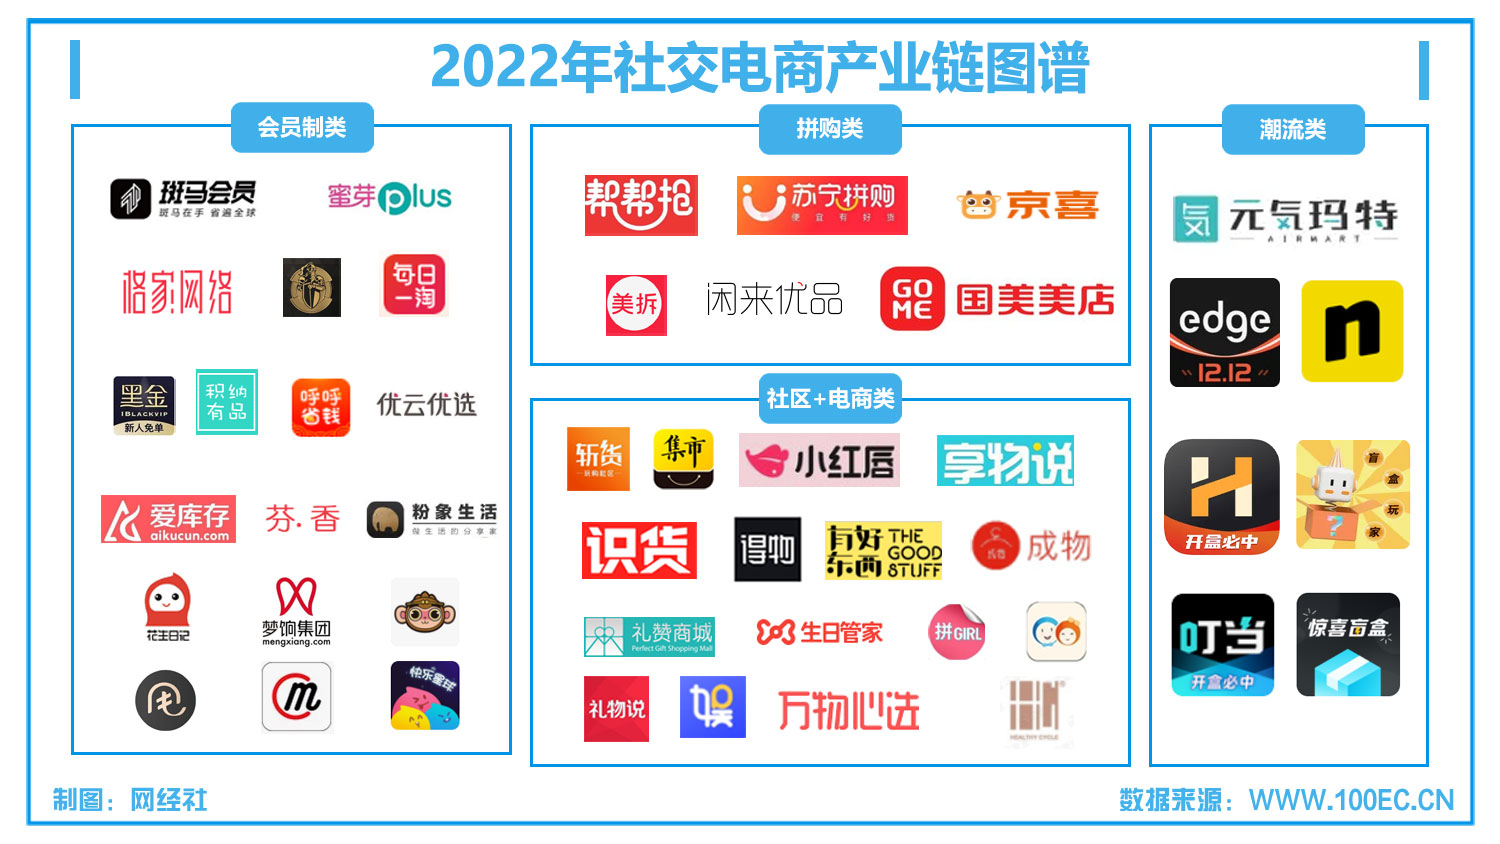 2022年社交电商产业链图谱(1).jpg